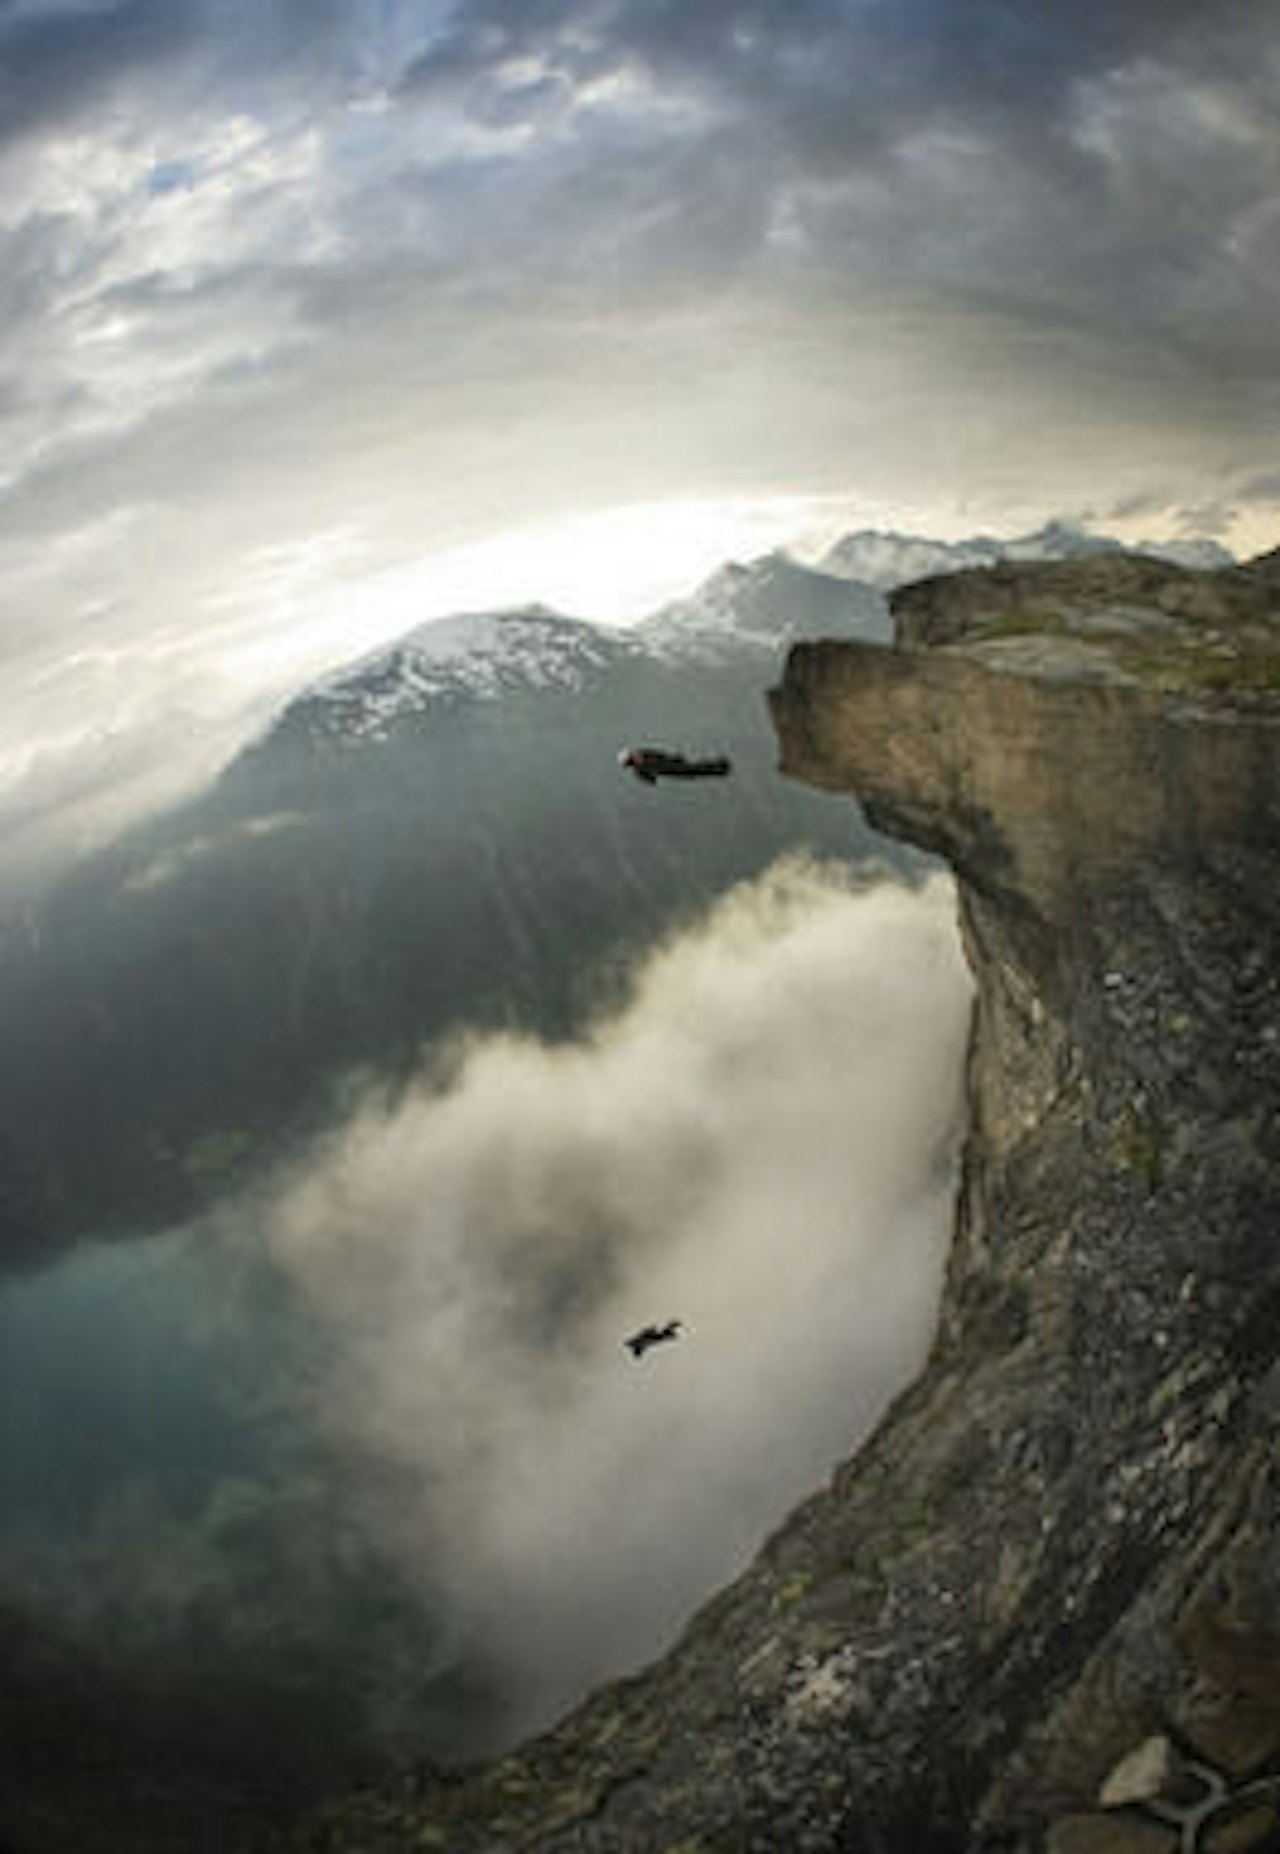 Mann mot mann skal nå verdens raskeste BASE hopper kåres i Romsdalen. Foto: worldbaserace.com